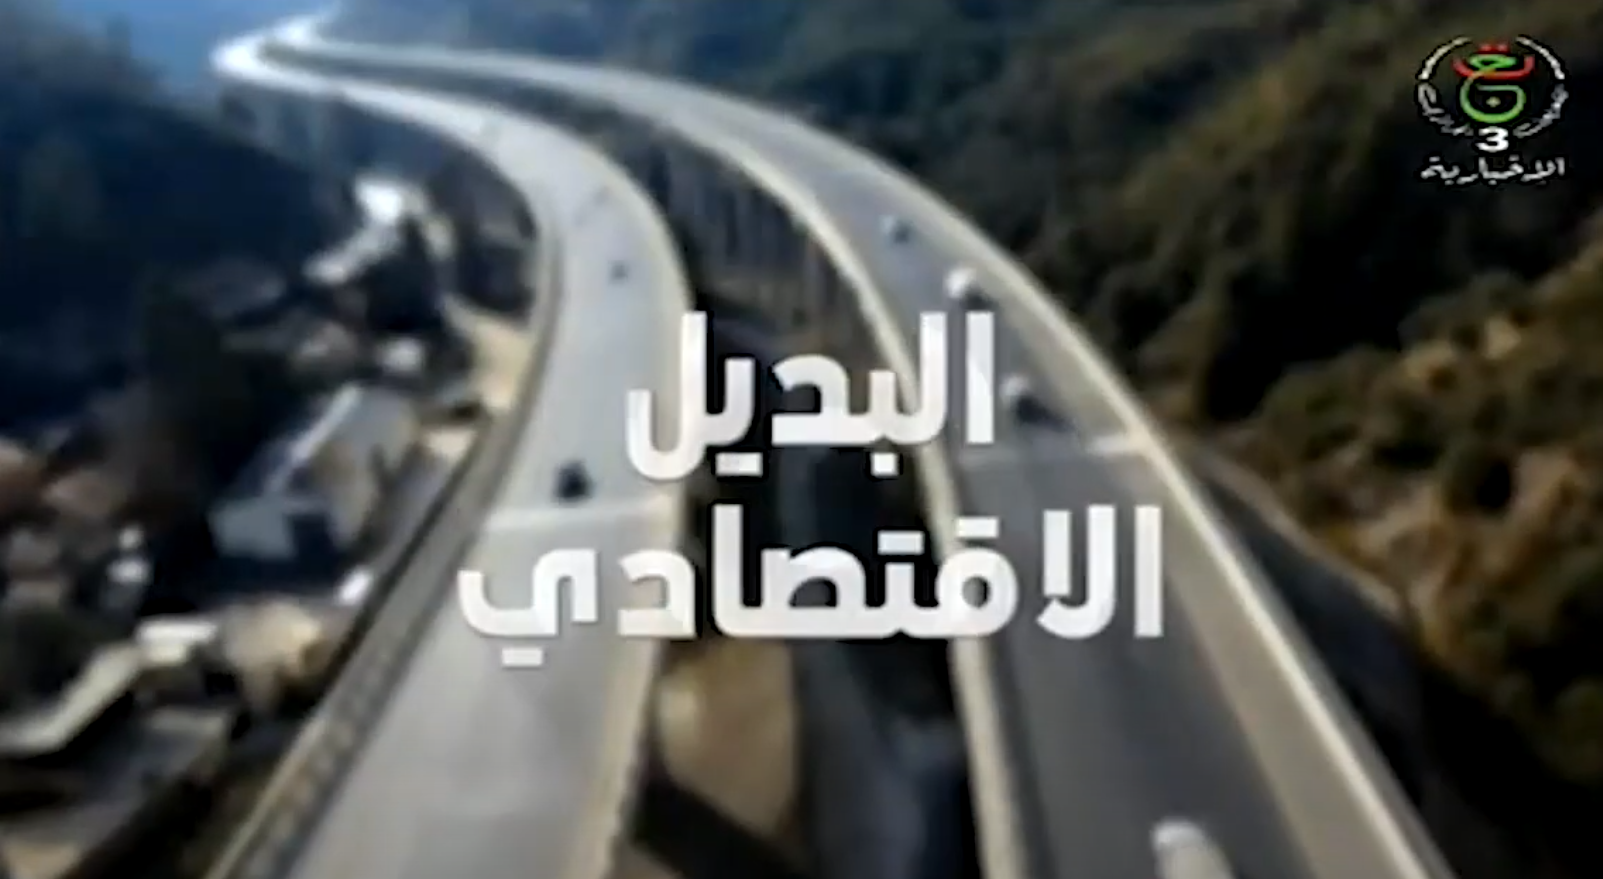 روبورتاج حول الجزائرية القطرية للصلب من إعداد التلفزيون العمومي الجزائري، حصة "البديل الاقتصادي"